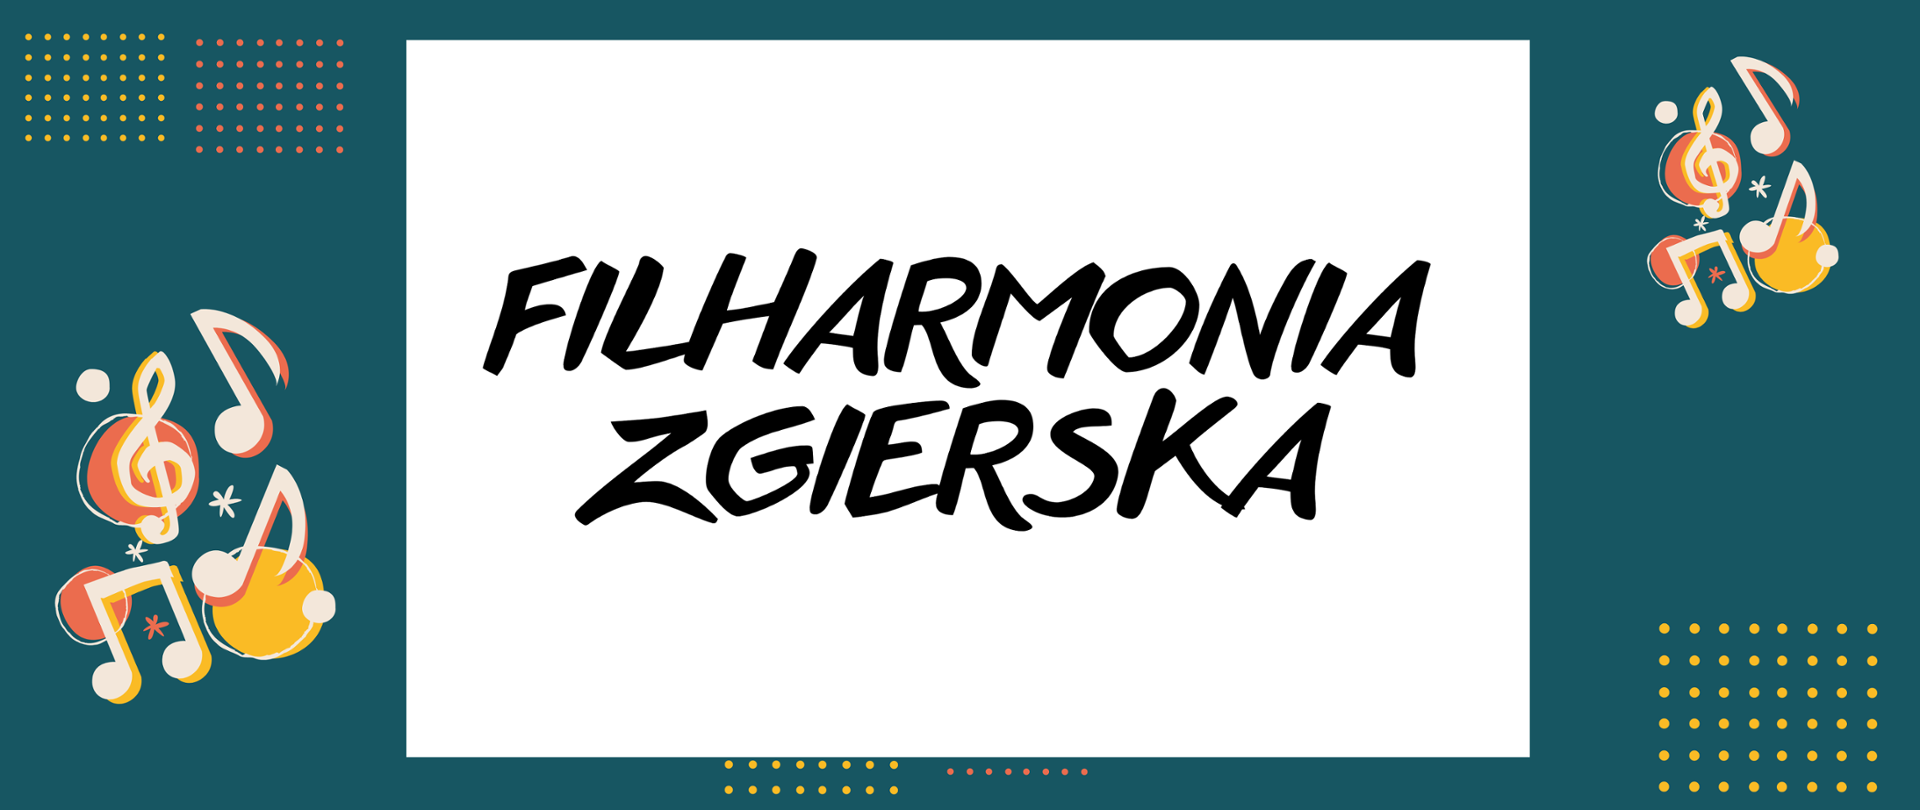 Na zielonym tle, po lewe i po prawej stronie ikony nut. W centralnej części czarny napis na białym tle "Filharmonia Zgierska".